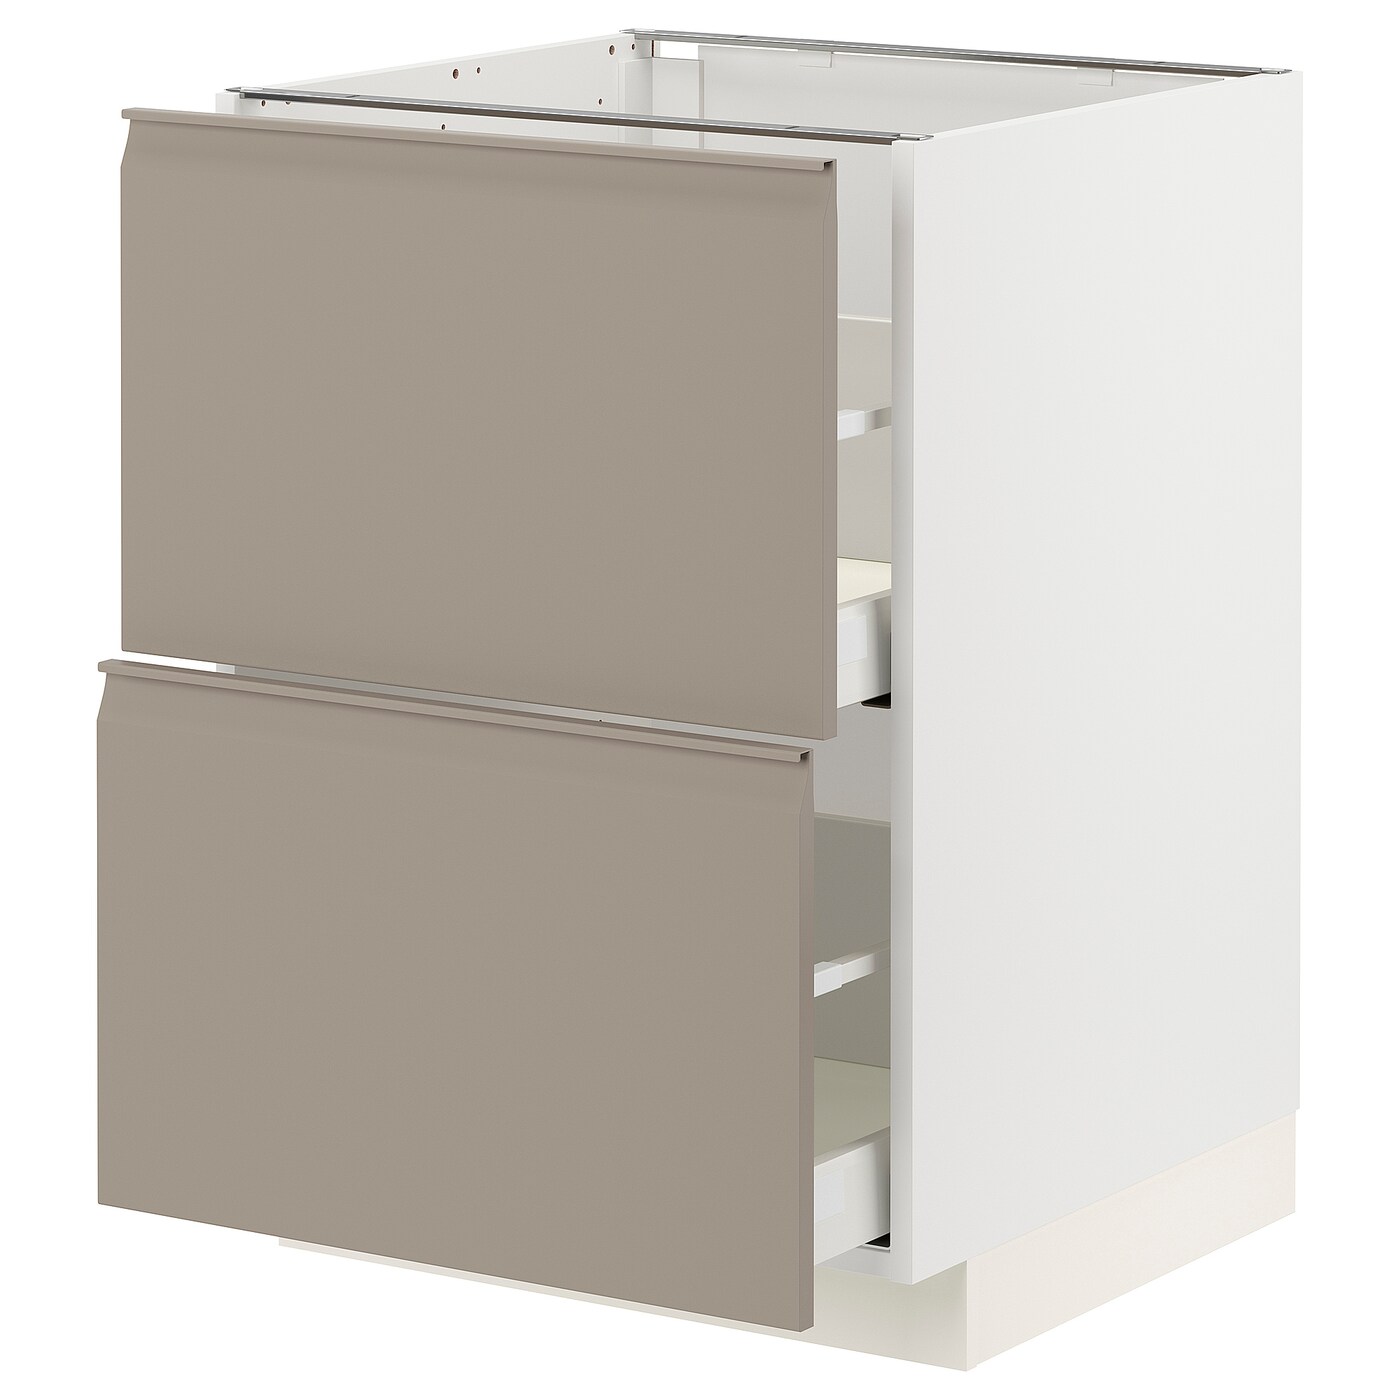 Напольный кухонный шкаф  - IKEA METOD MAXIMERA, 88x62x60см, белый/темно-бежевый, МЕТОД МАКСИМЕРА ИКЕА